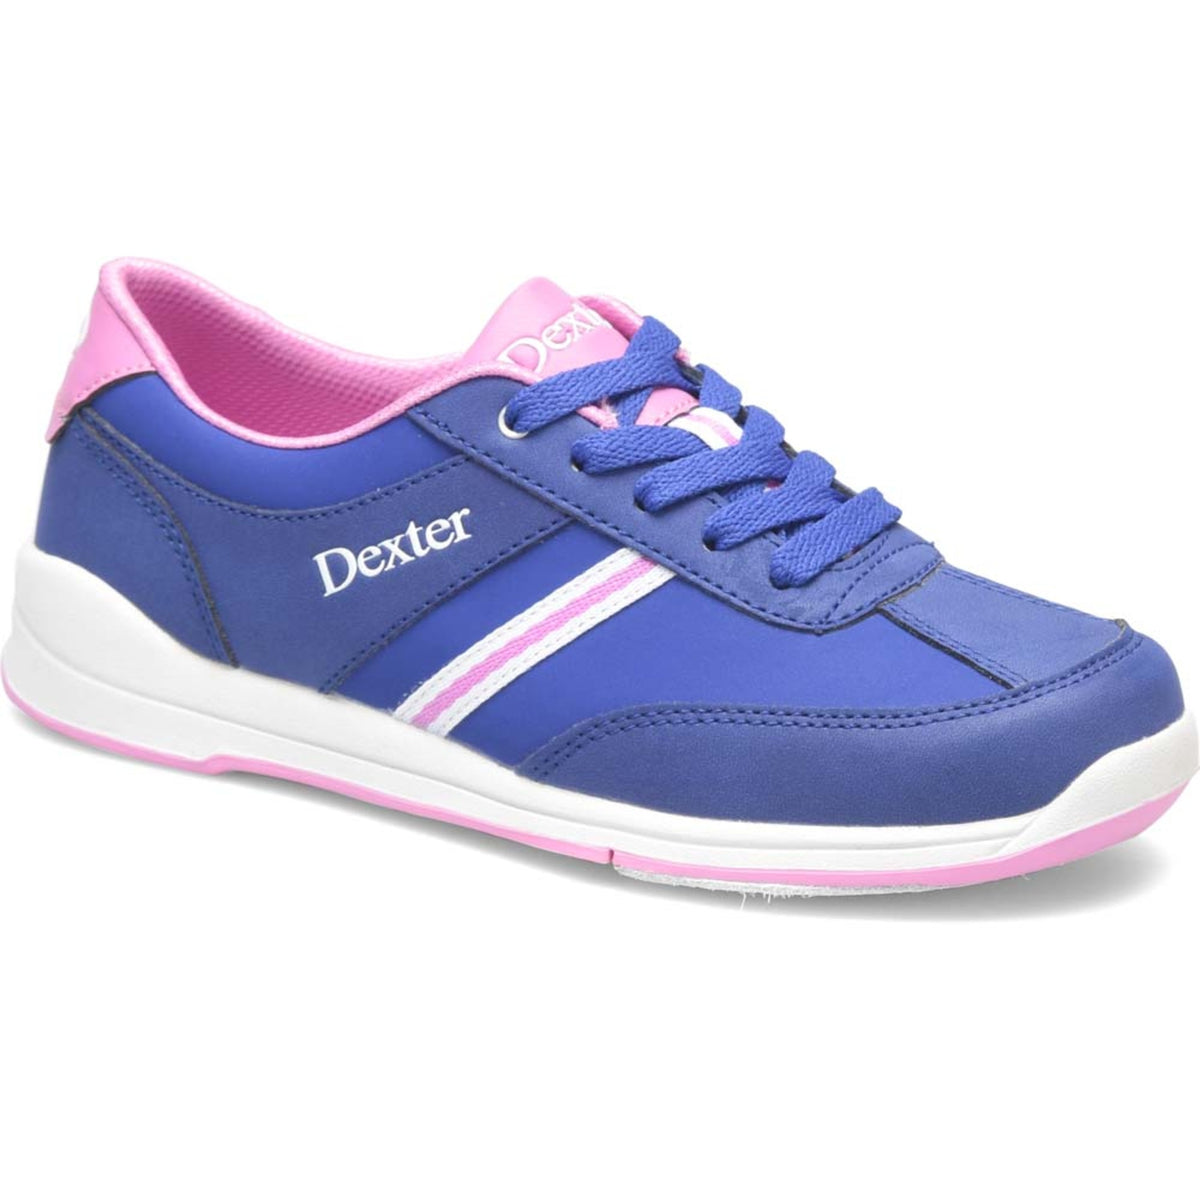 Dani Royal Blue/Pink Shoes